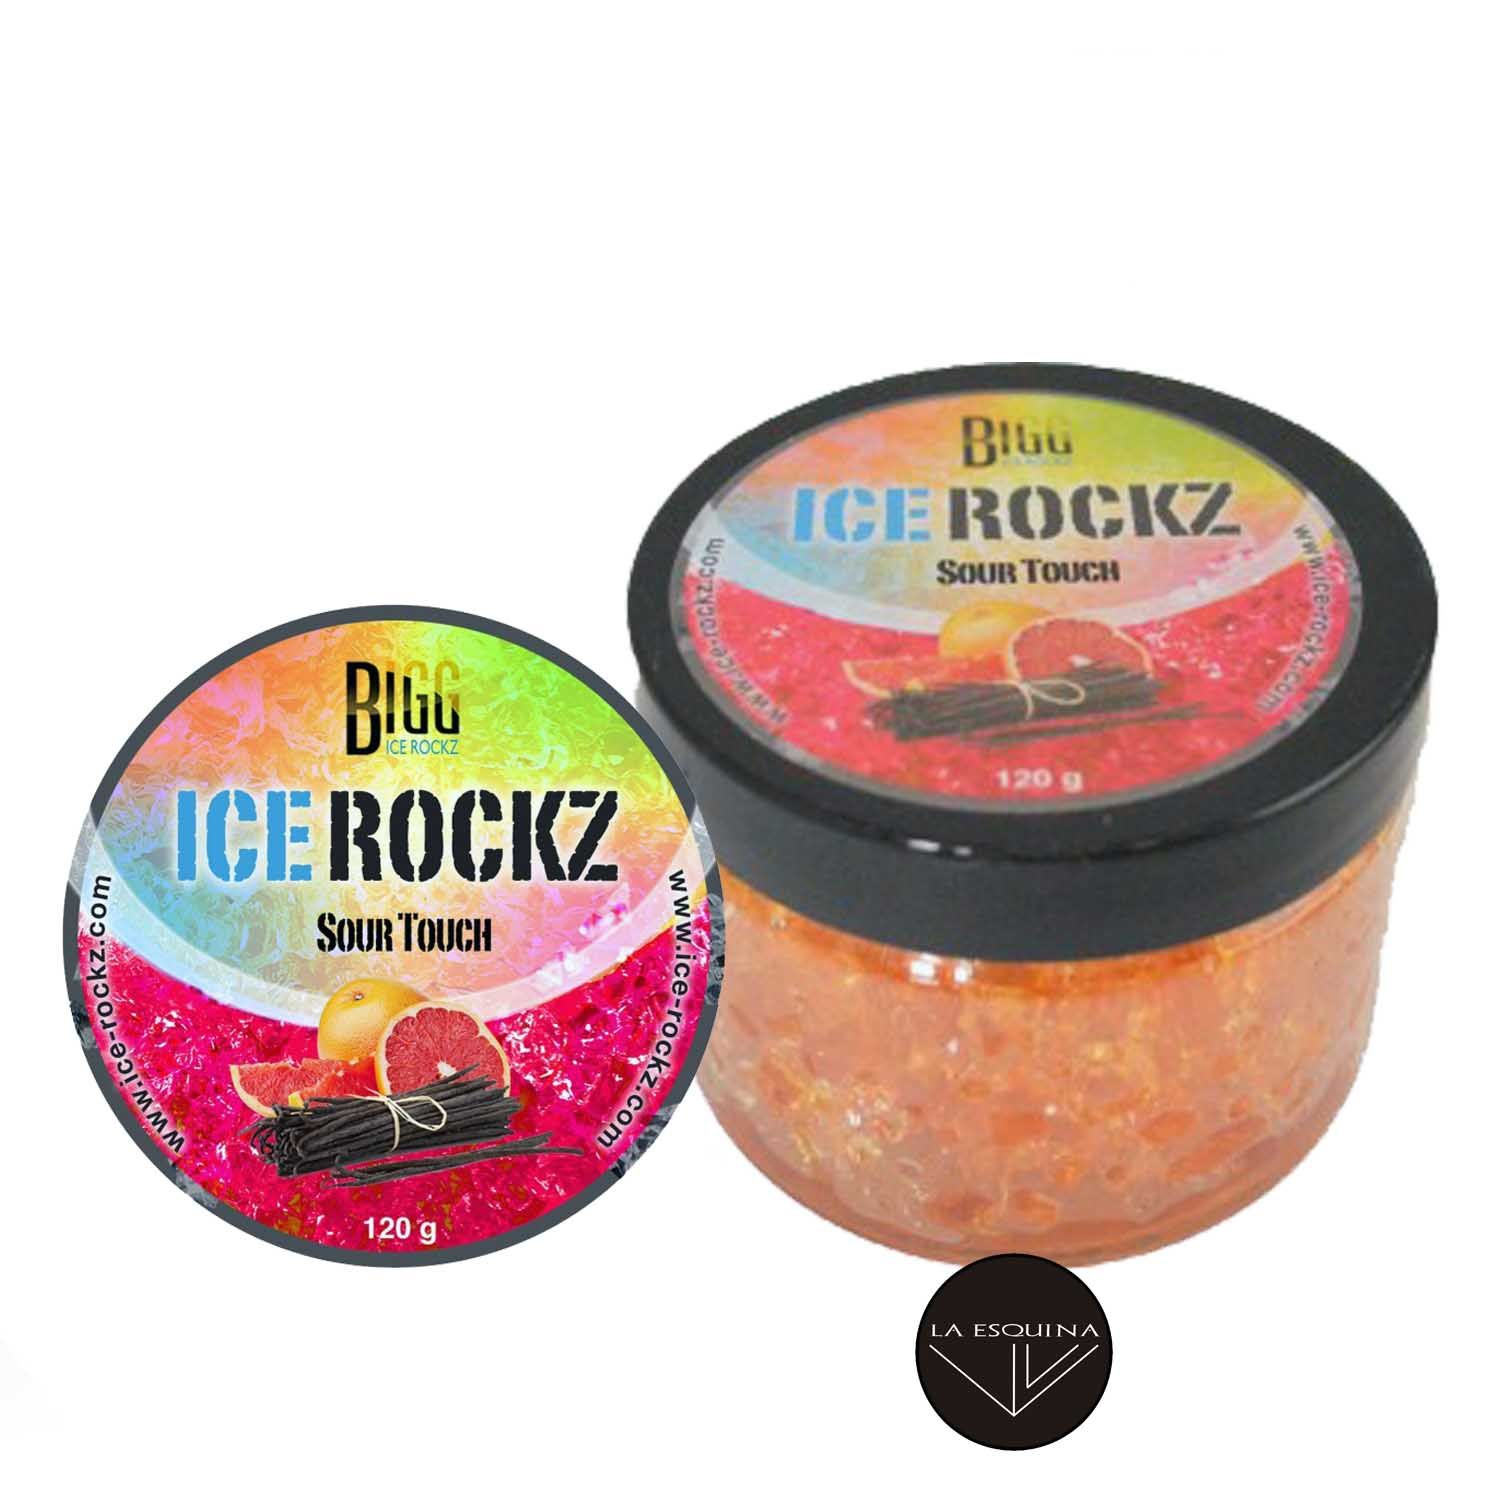 Gel Rock de Cachimba BIGG ICE ROCKZ – 120 g. – Sour Touch